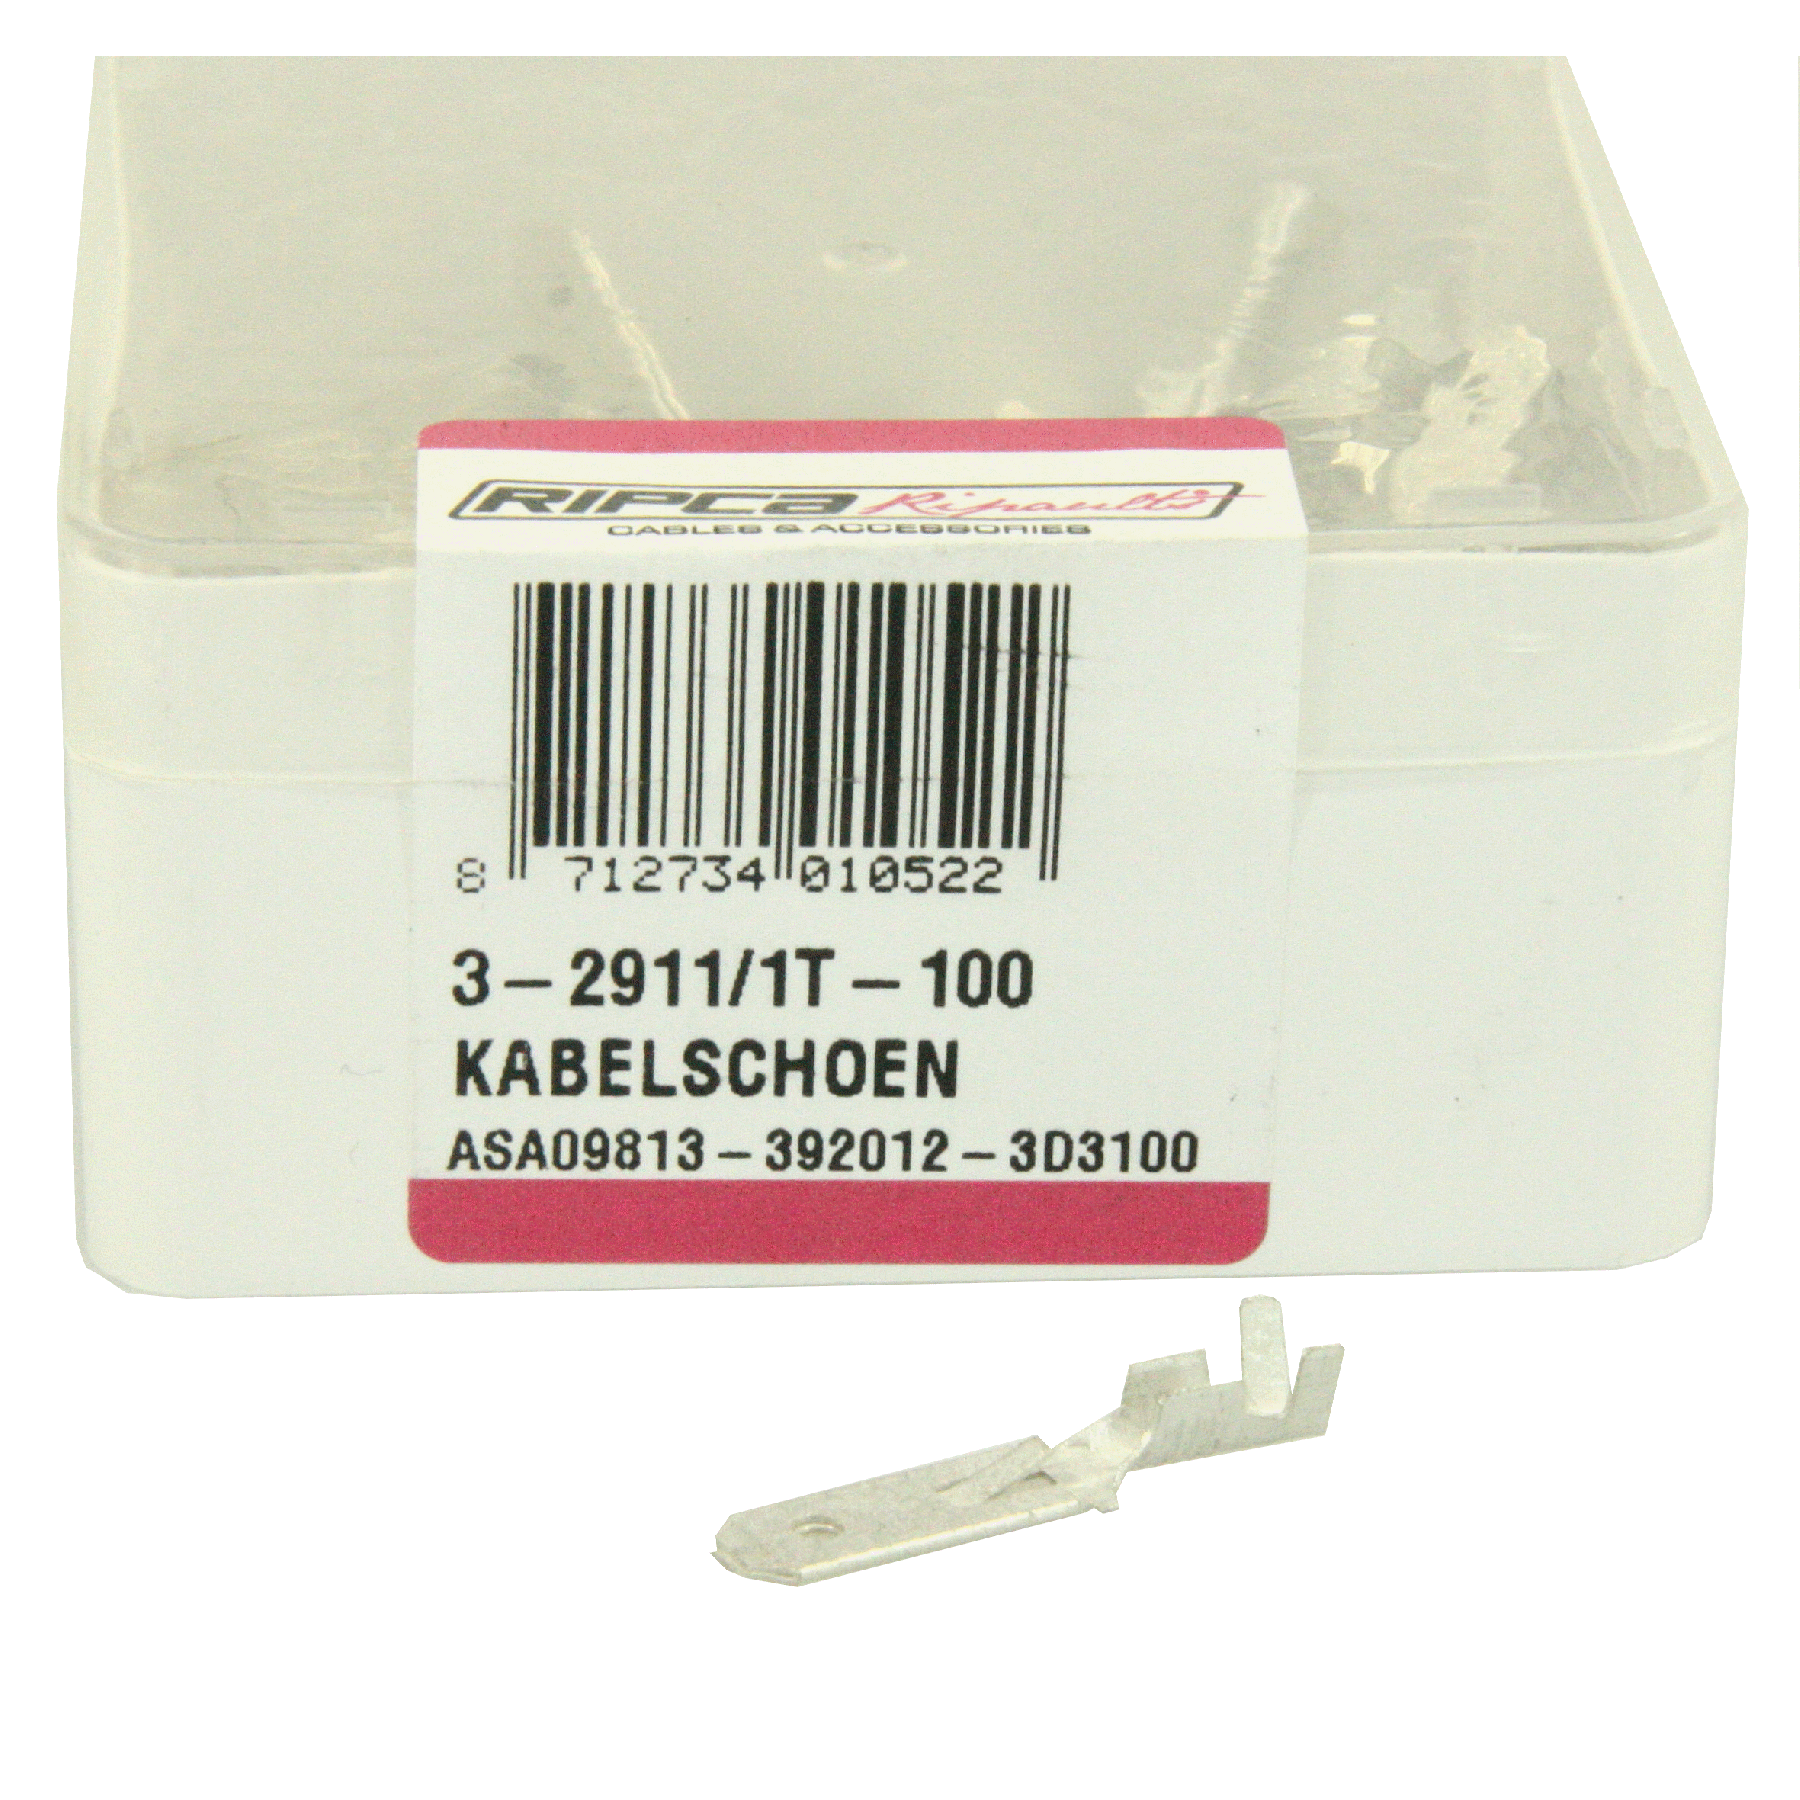 ds. Kabelschoen 2911 (100)